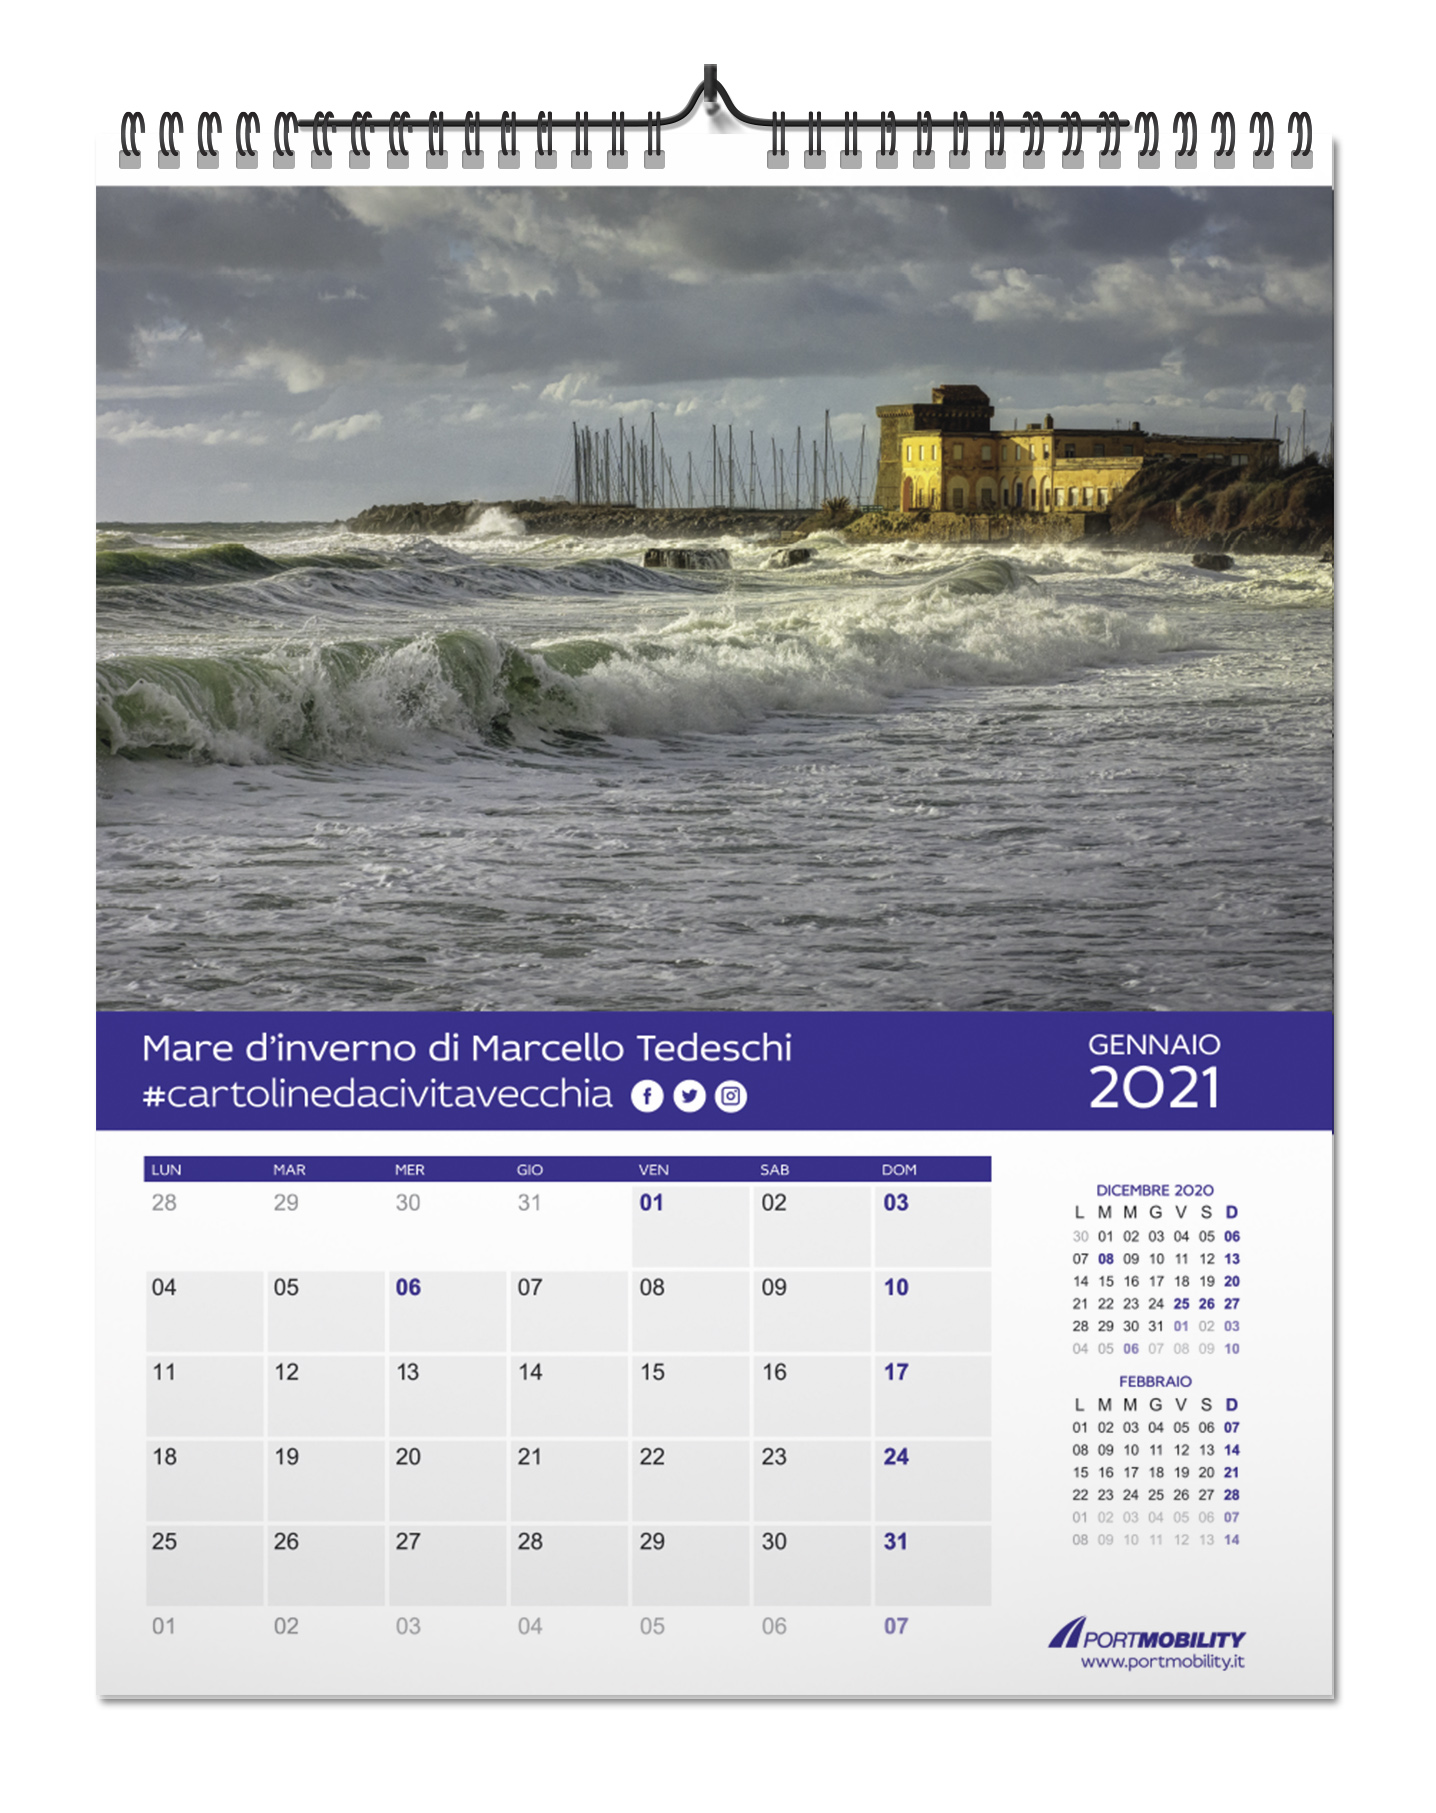 Cartoline da Civitavecchia 2021: il mese di gennaio